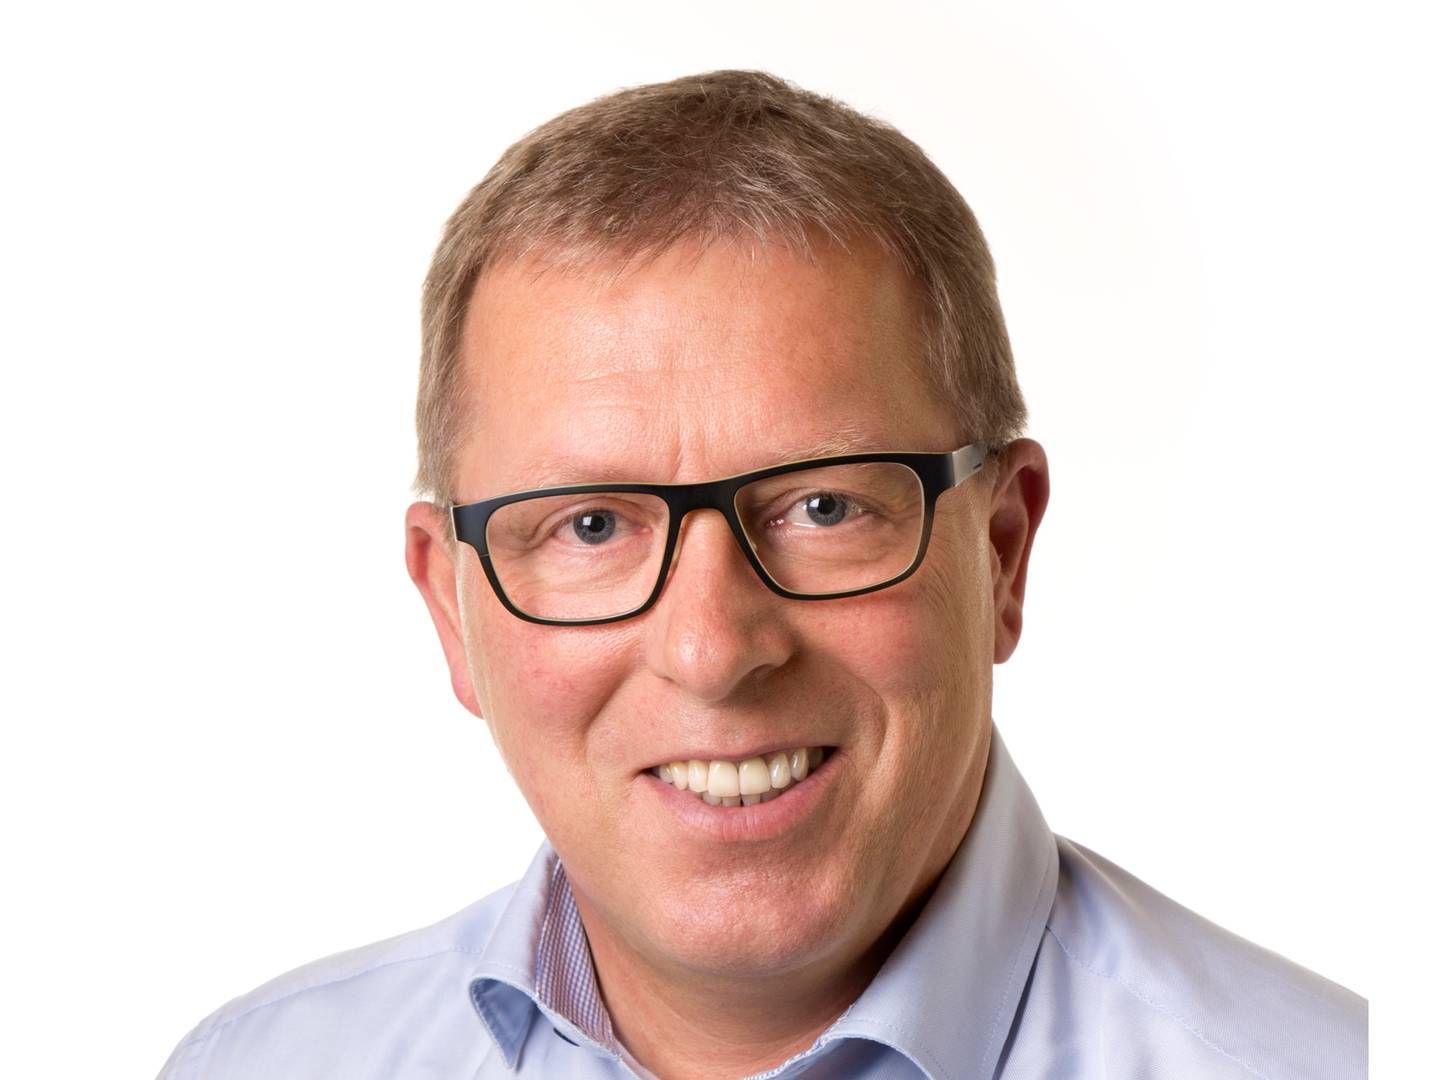 Adm. direktør for Dansk Boligbyg, Anton Nørgaard, kan glæde sig over en stor stigning i omsætningen, men er nervøs ved en uenigehd med en bygherre. | Foto: PR